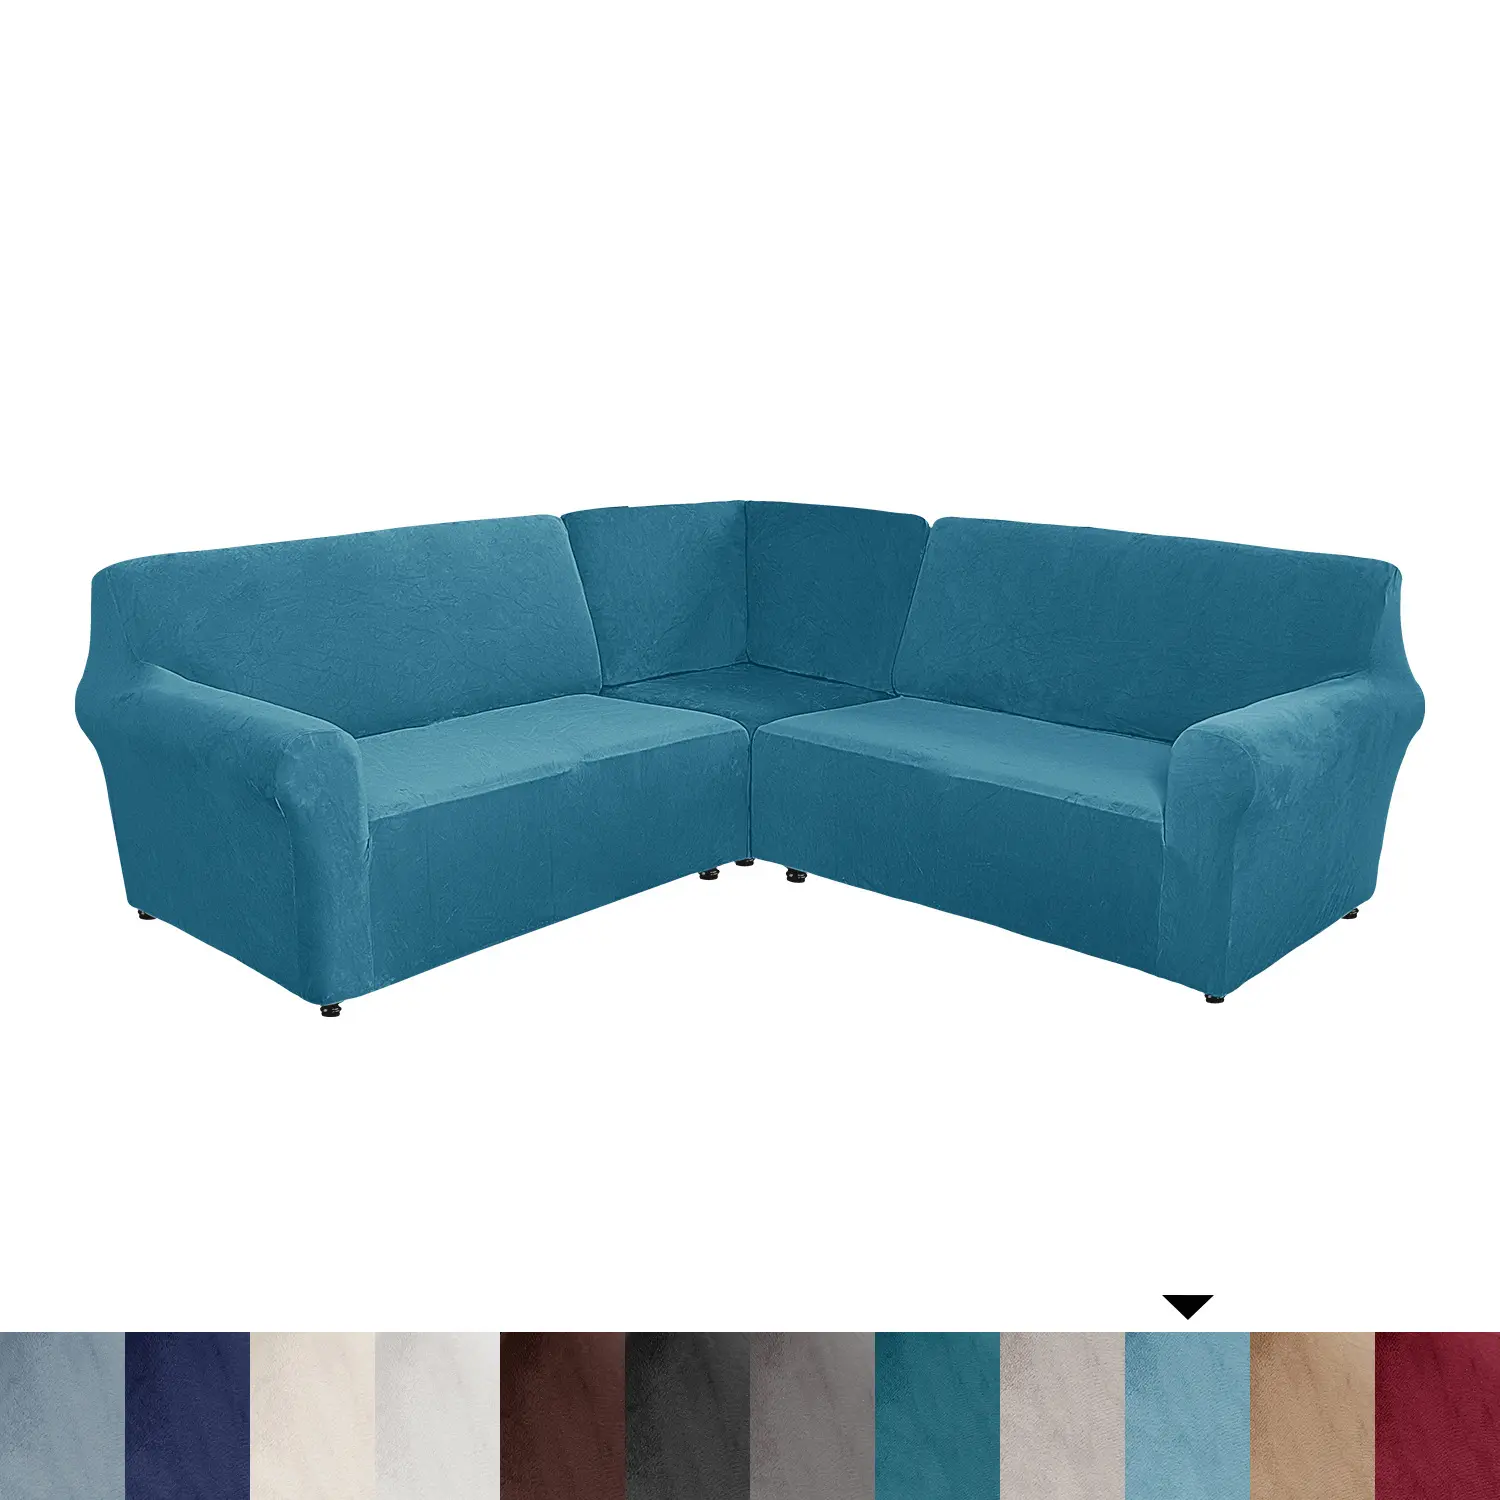 Tavuskuşu mavi kadife l-şekilli 5-seater köşe şezlong kanepe kılıfı düz renk basit mobilya kapak kanepe kılıfı